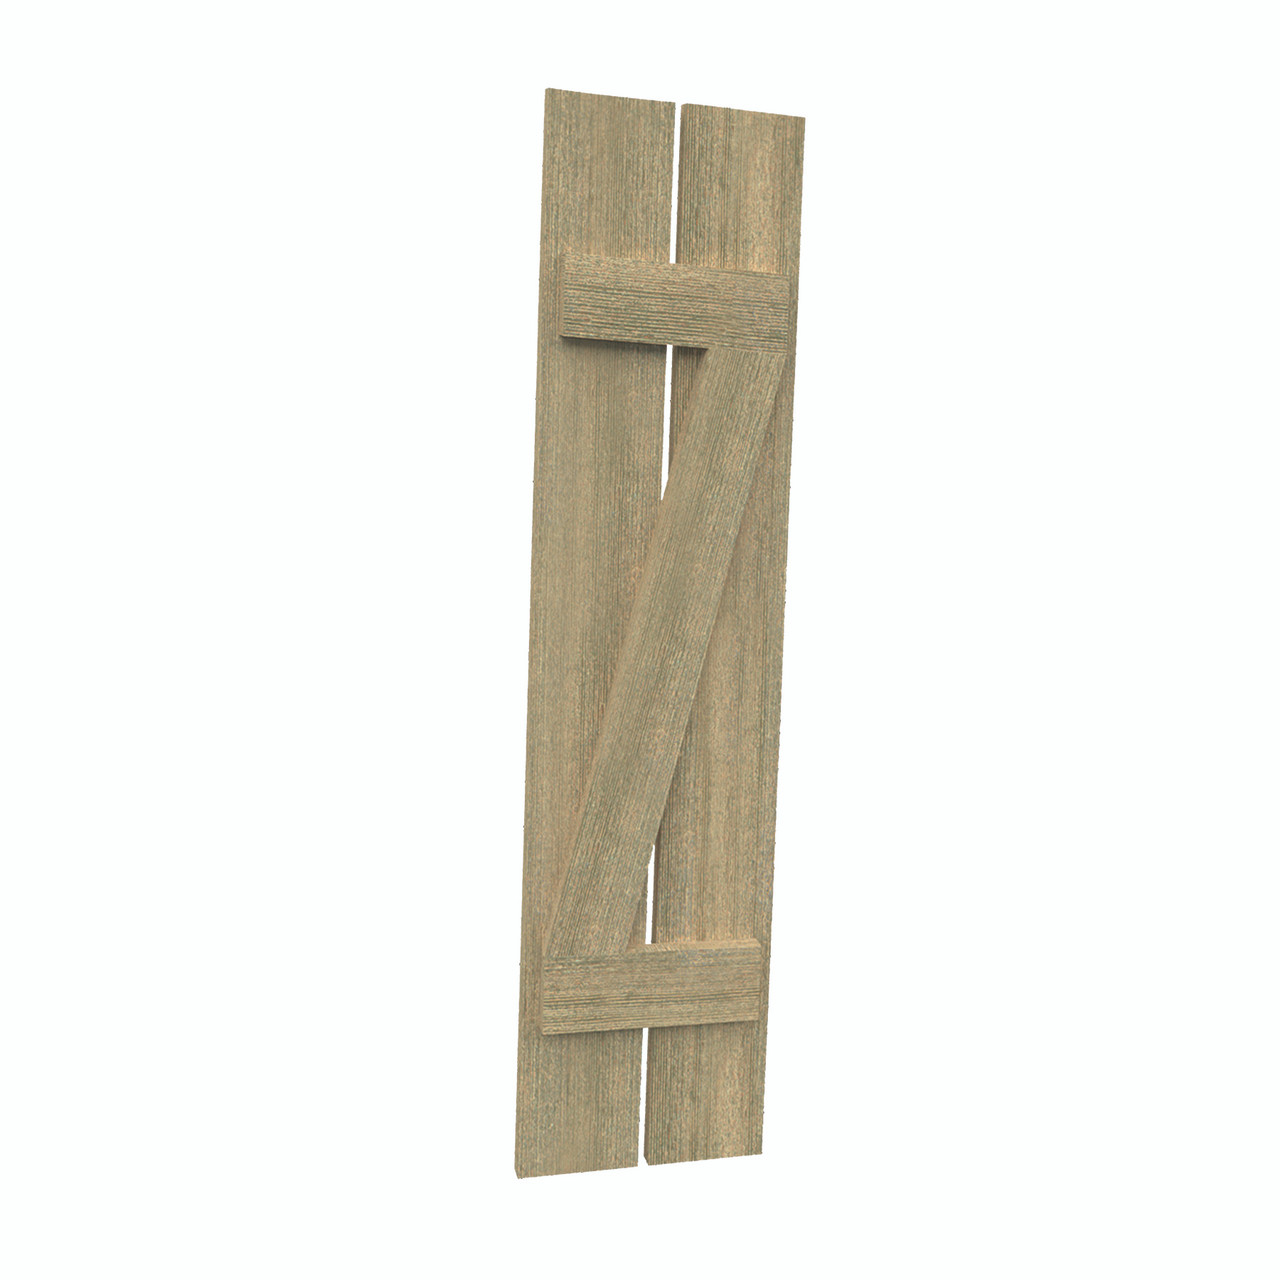 12 inch by 113 inch Plank Shutter with 2-Plank, Z-Batten